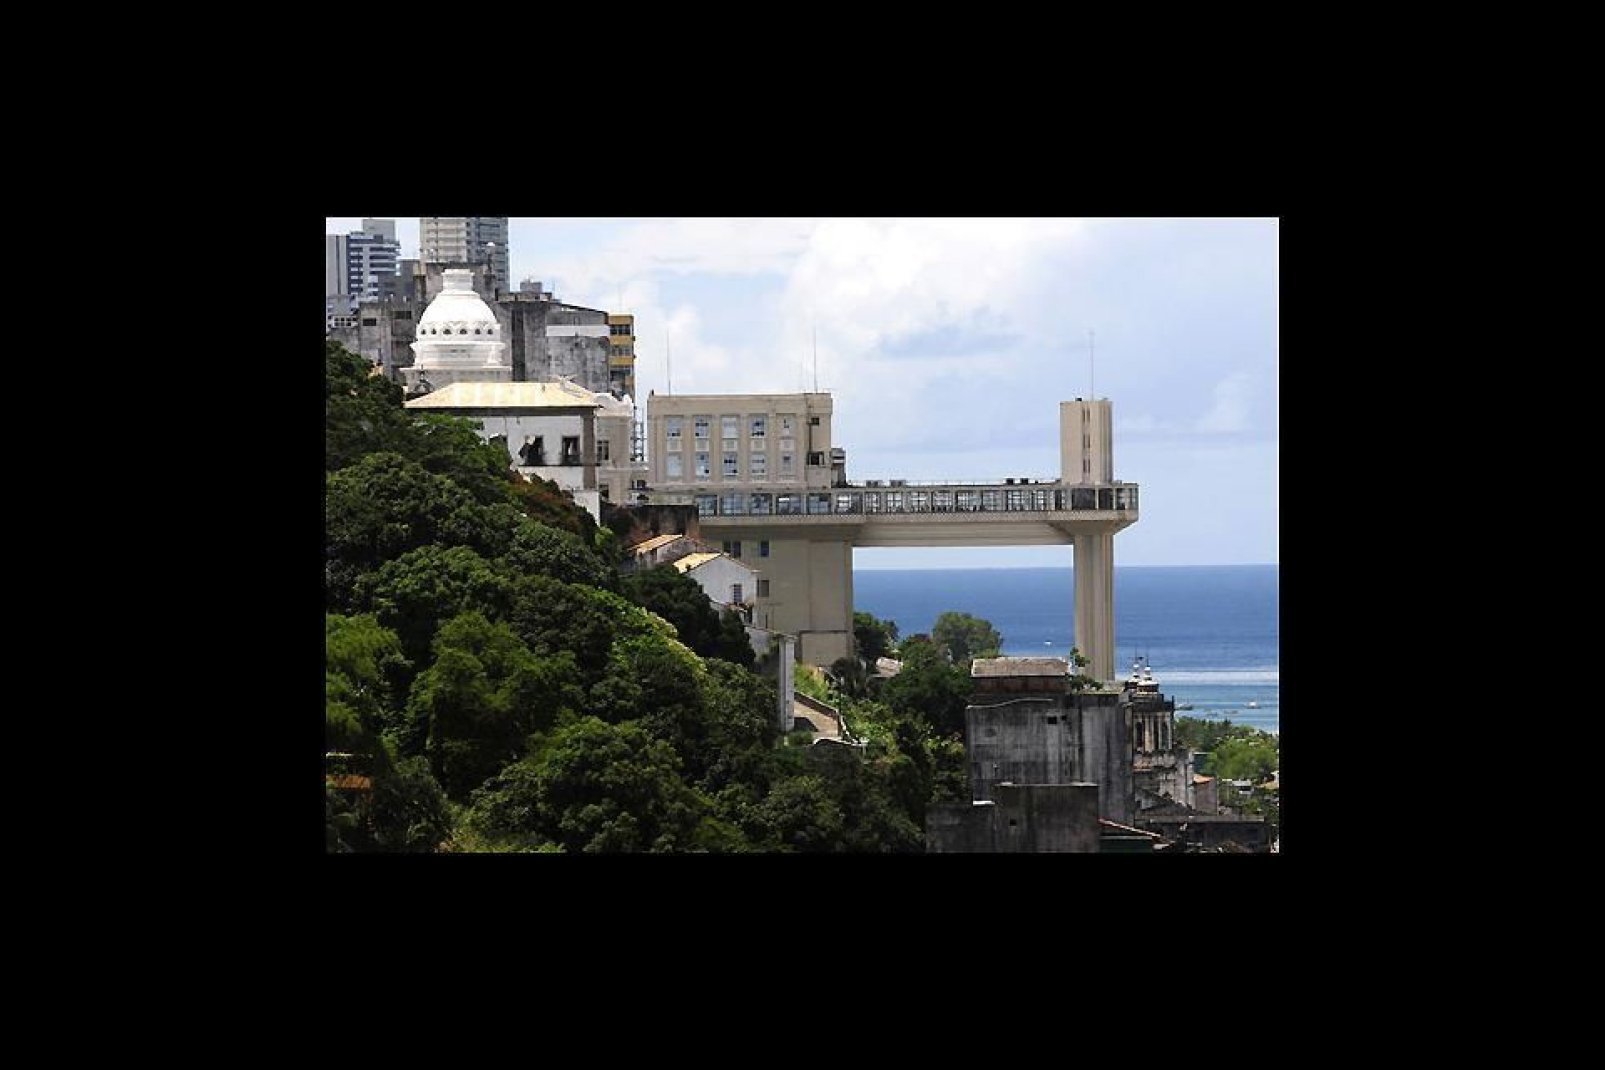 Der Lacerda-Lift ist eines der Symbole der Stadt und wurde 1930 eingeweiht. Von oben hat man eine wunderschöne Aussicht auf die Allerheiligenbucht.